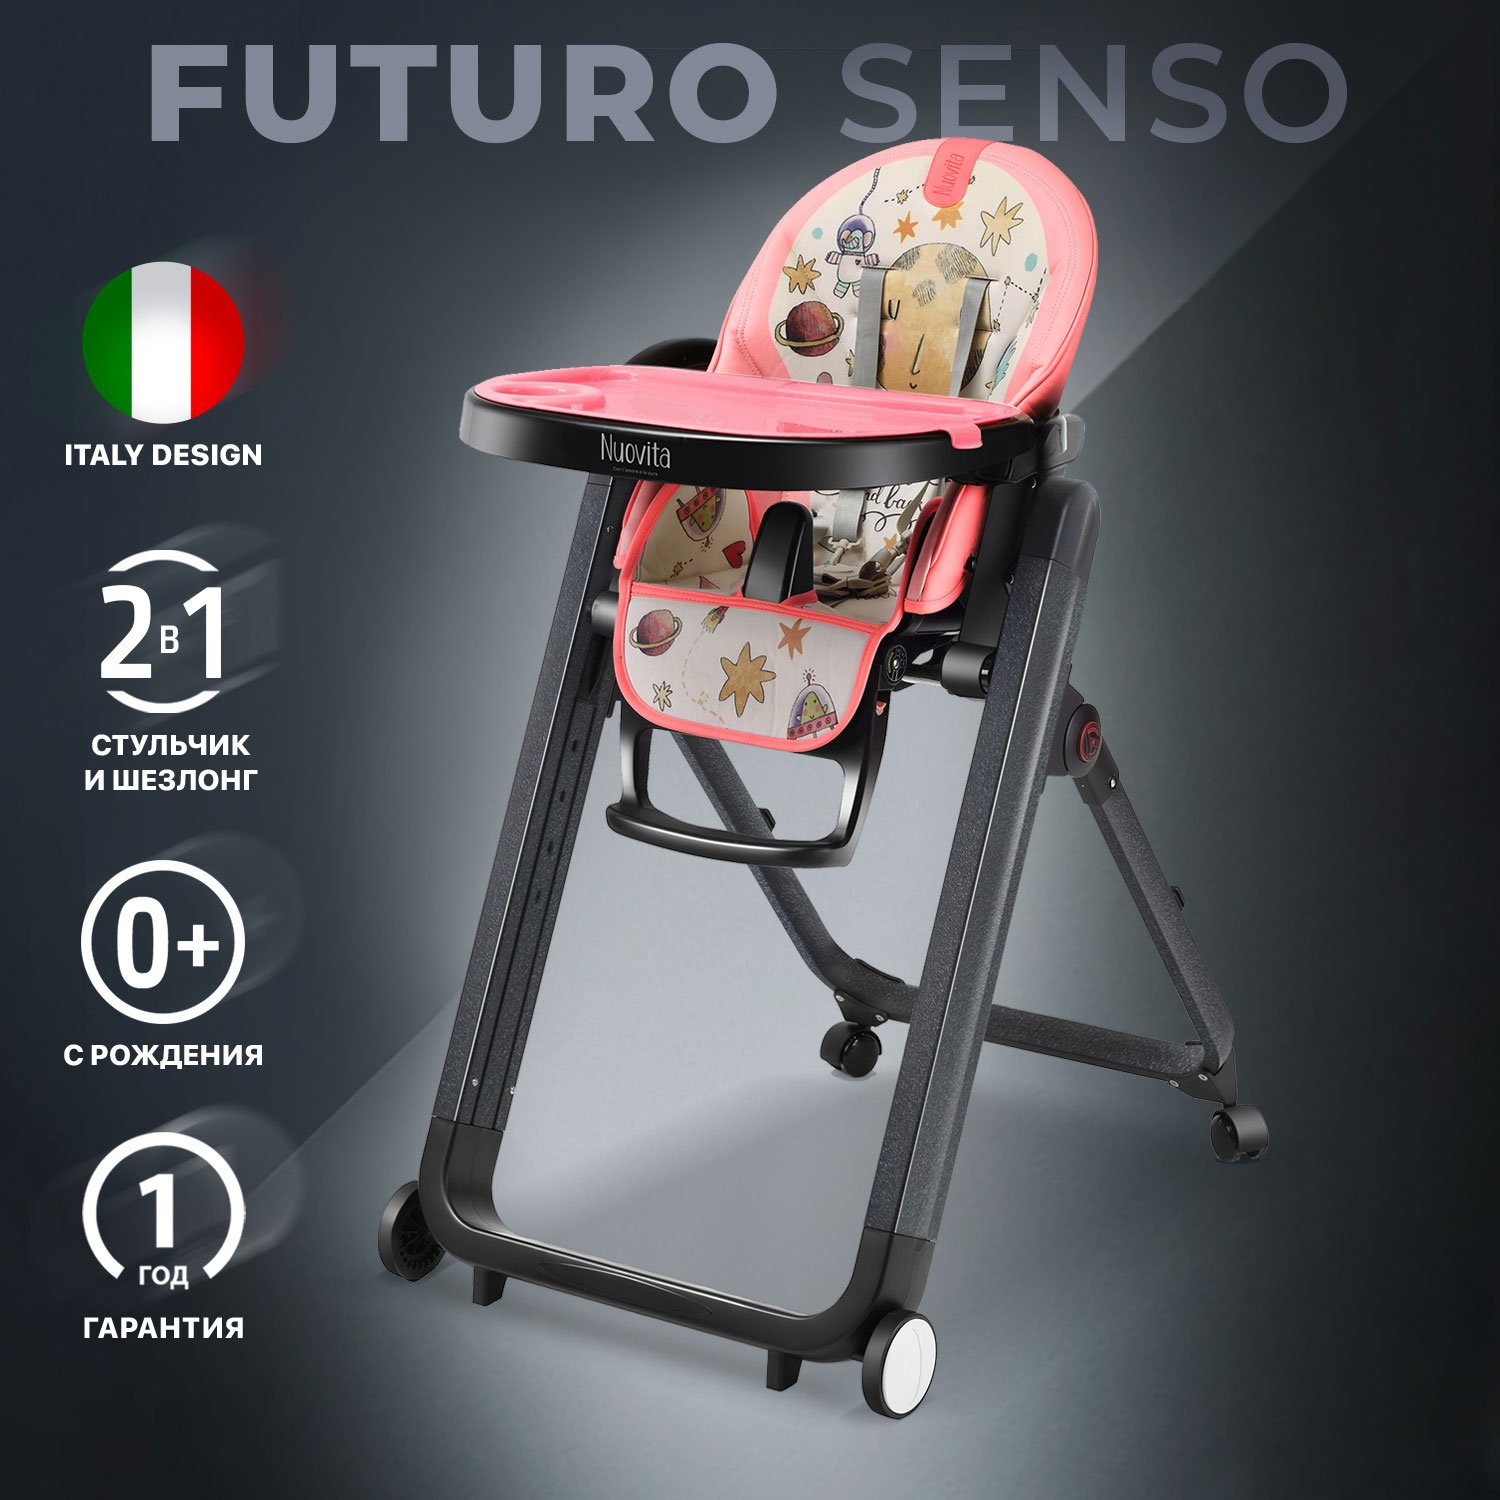 Стульчик для кормления Nuovita Futuro Senso Nero (Cosmo rosa/Розовый космос) стульчик для кормления bugaboo растущий giraffe с сиденьем и подносом